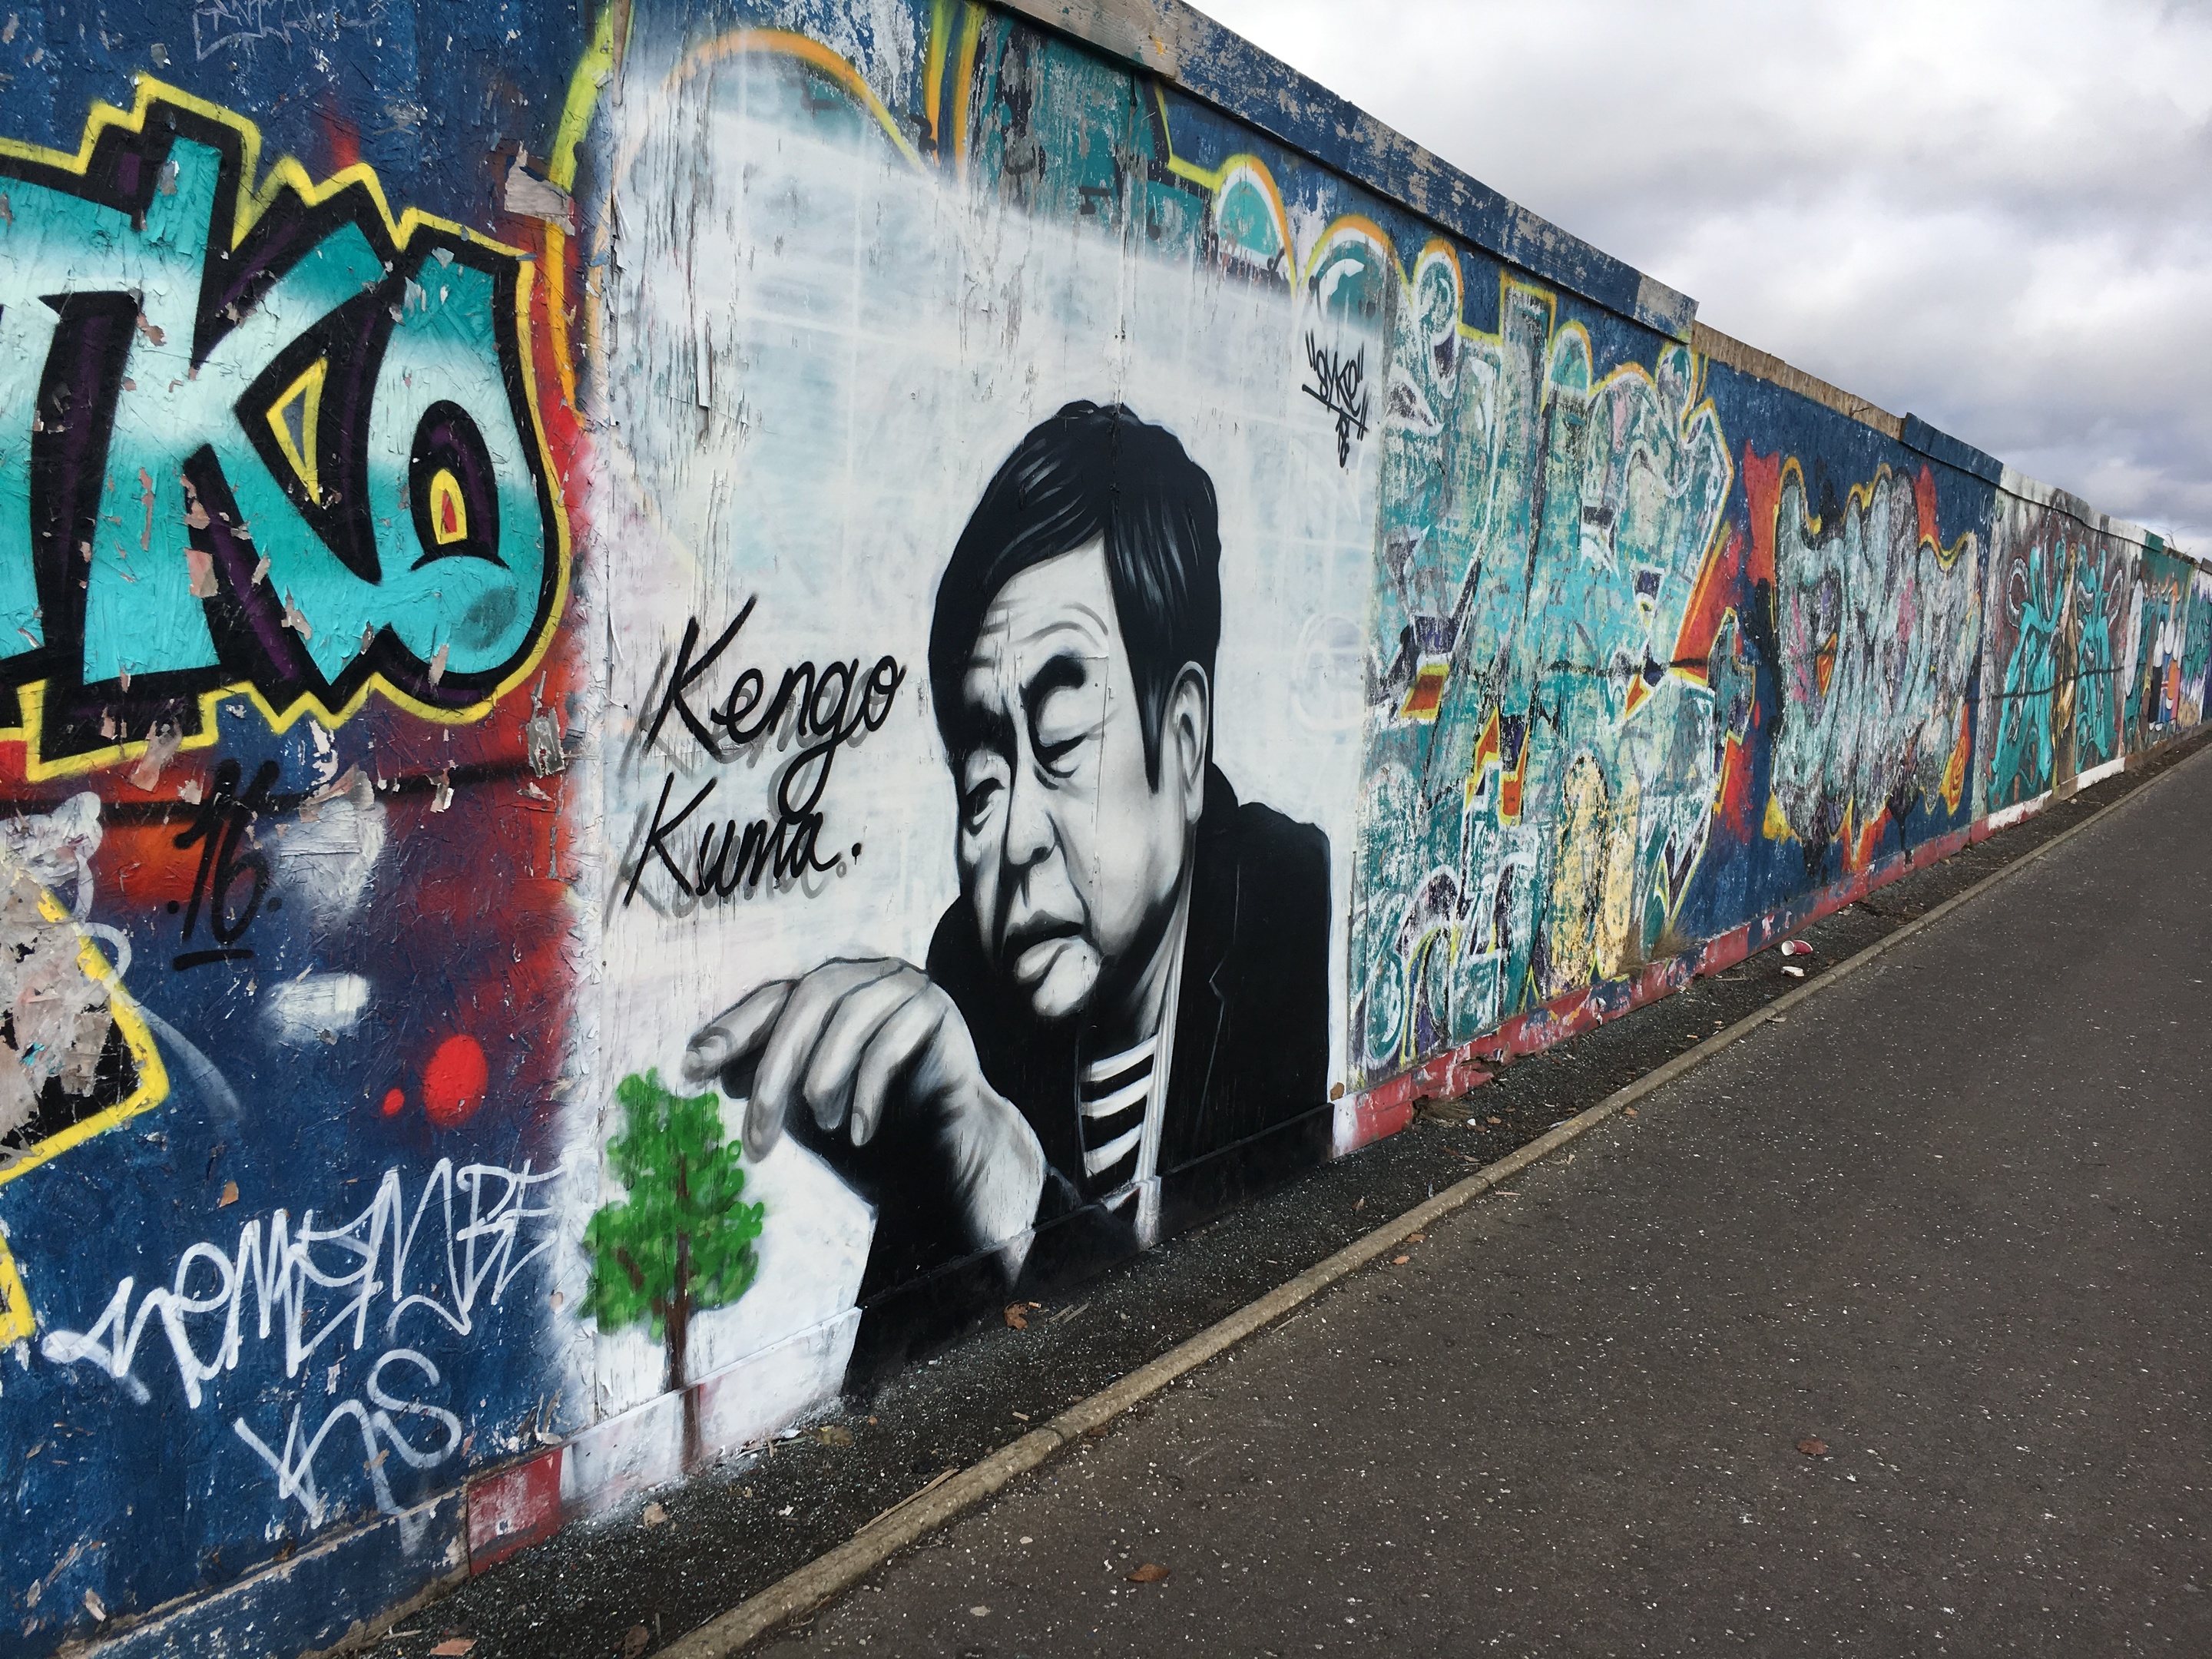 The graffiti Kengo Kuma.